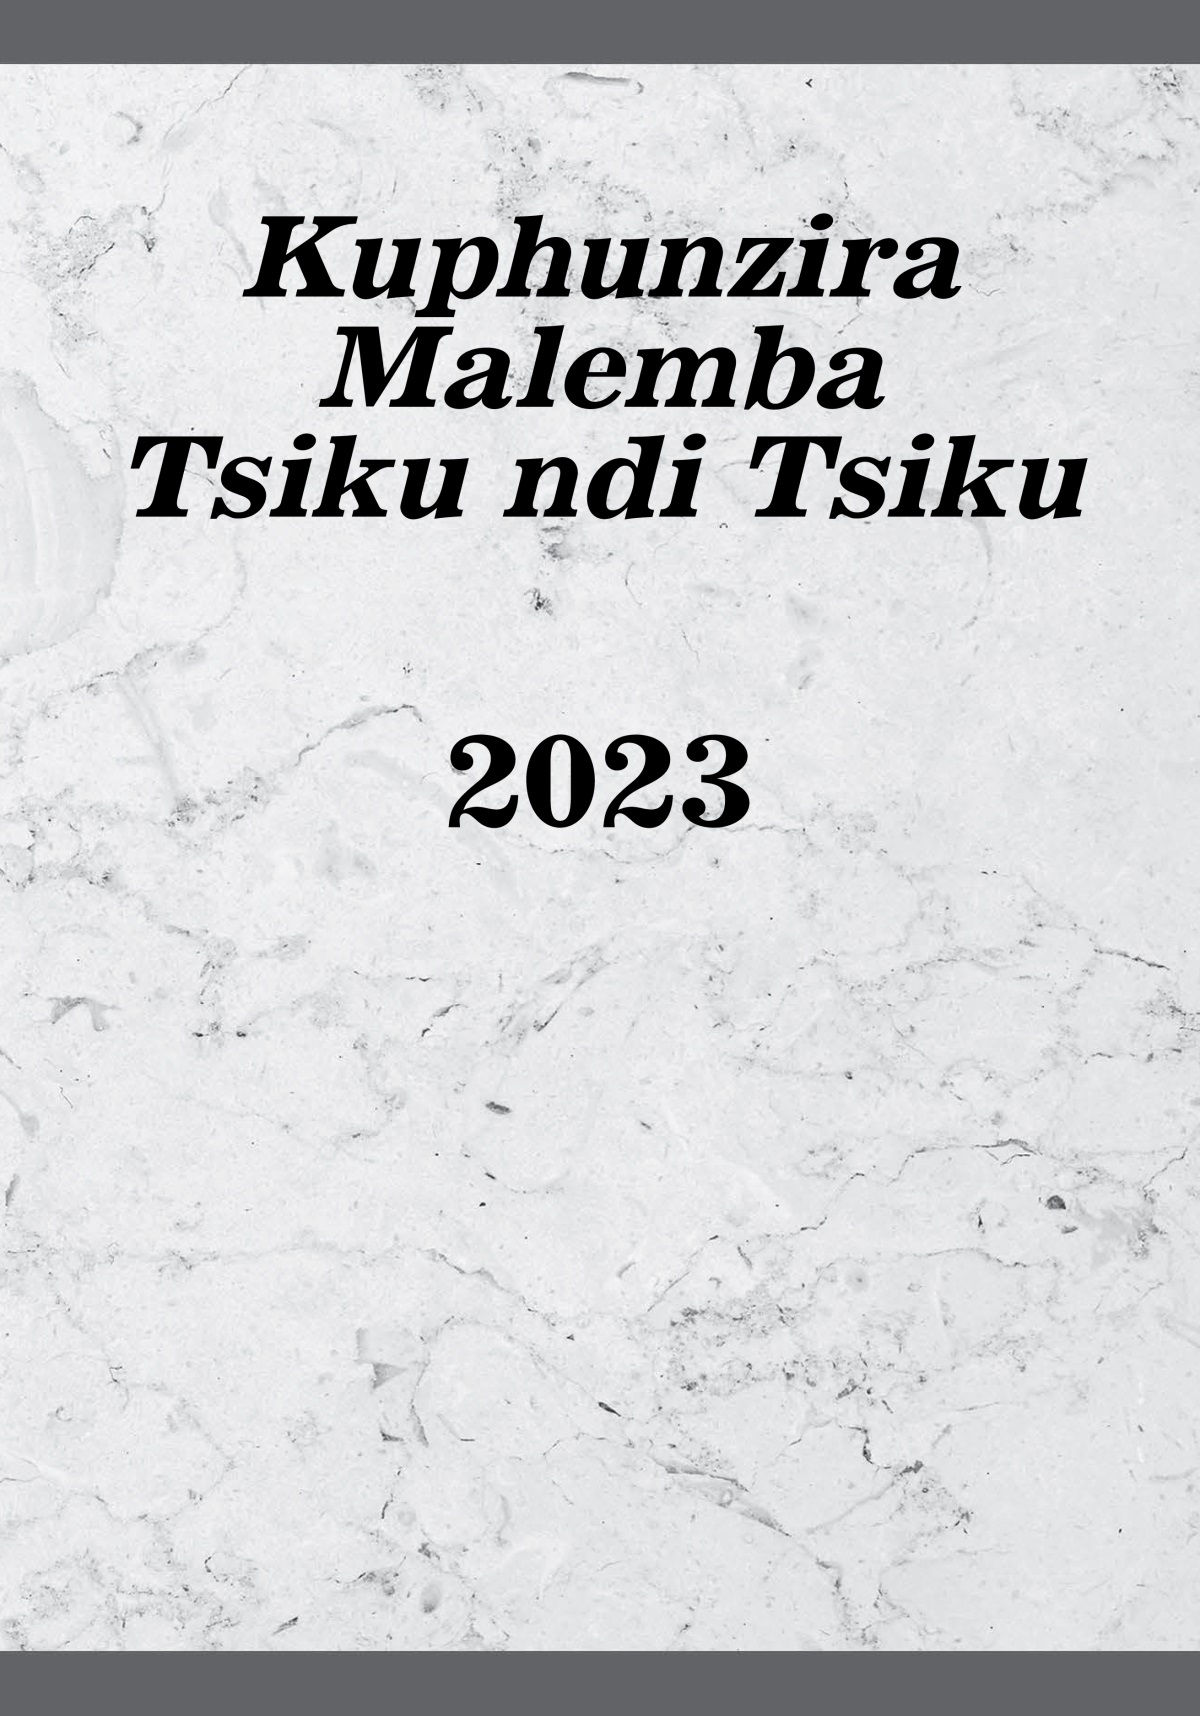 Kuphunzira Malemba Tsiku Ndi Tsiku—2023 — Watchtower Laibulale Ya Pa